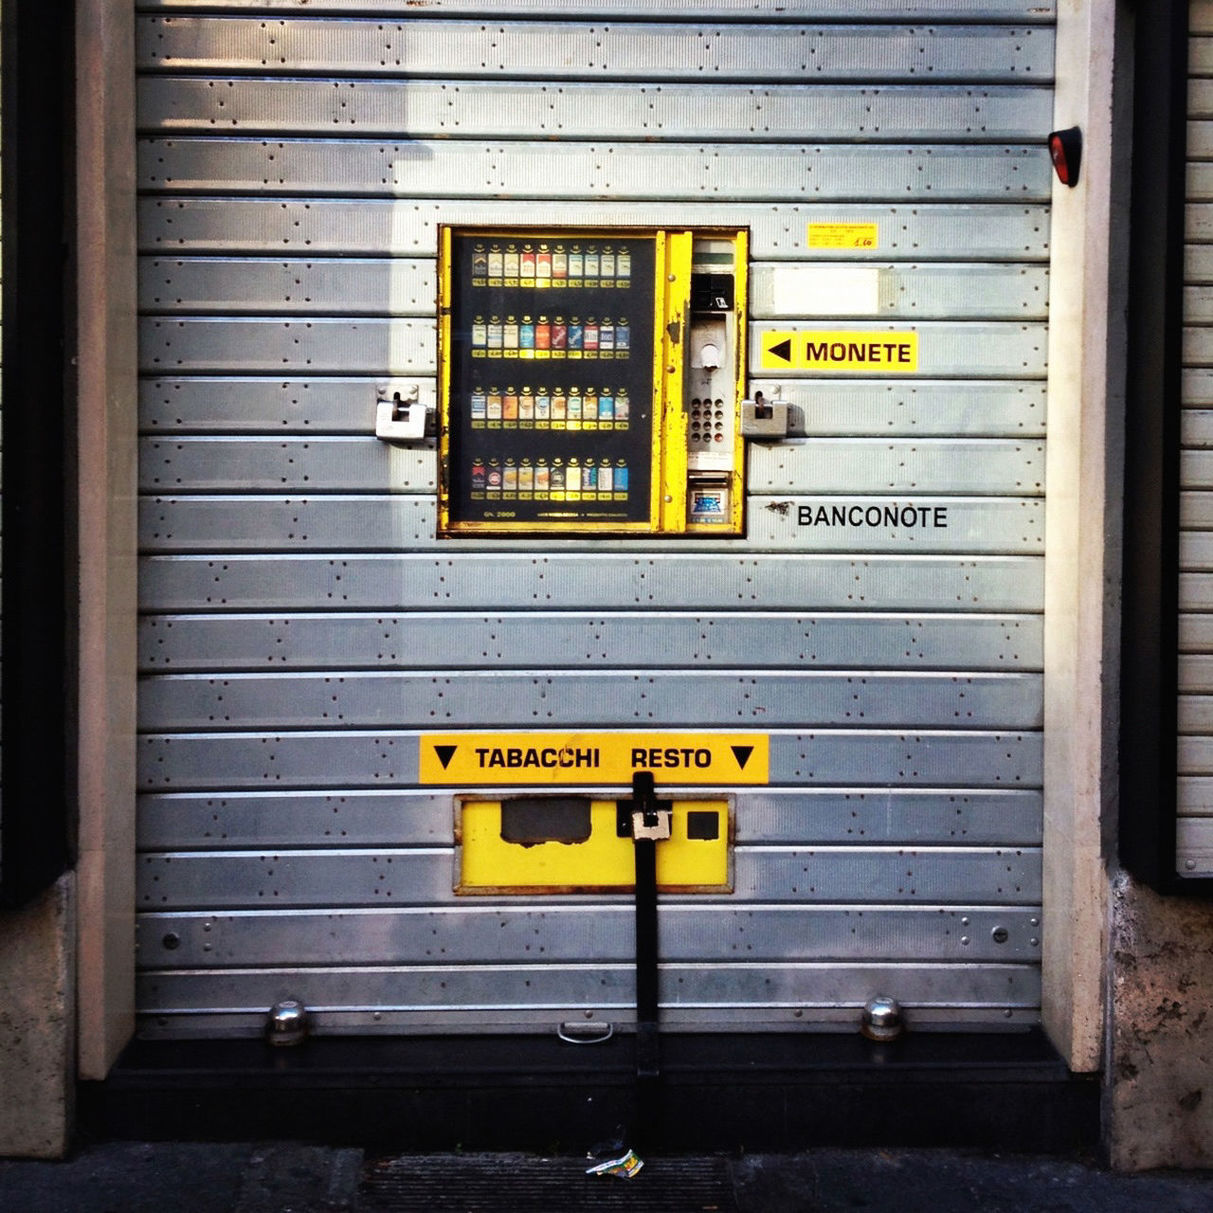 Vending machine on shutter